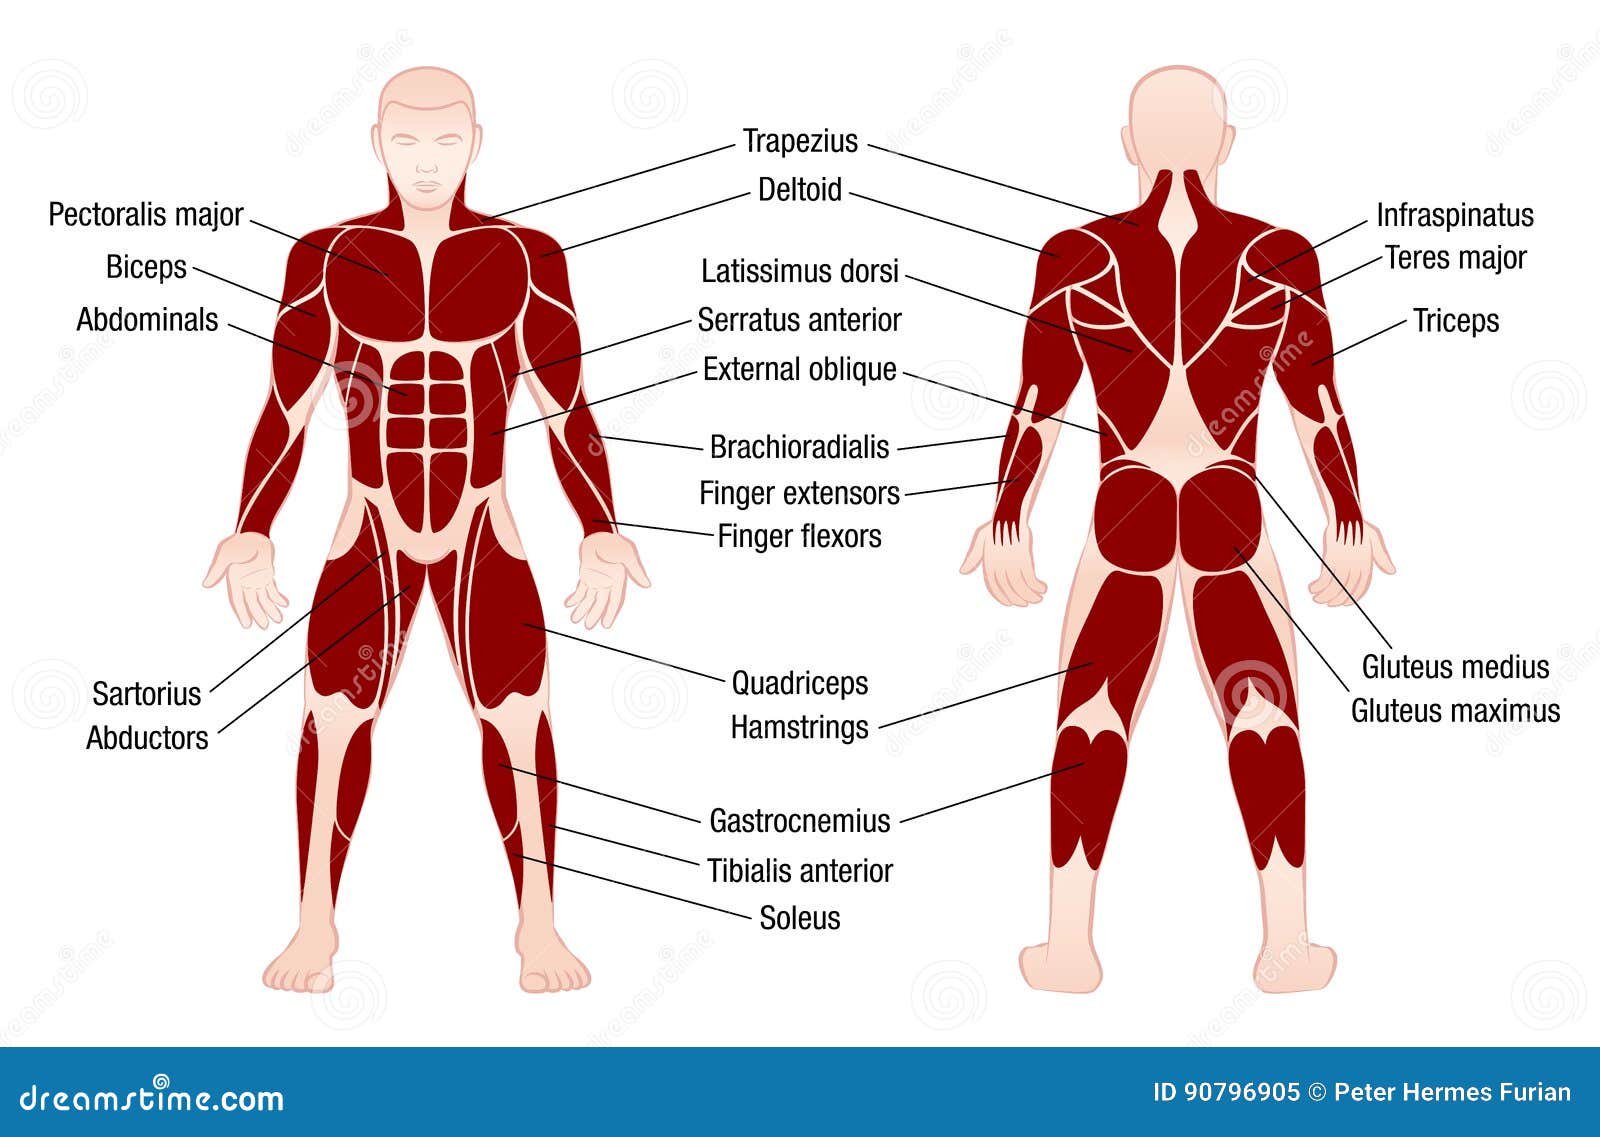 Muscle Symmetry Chart